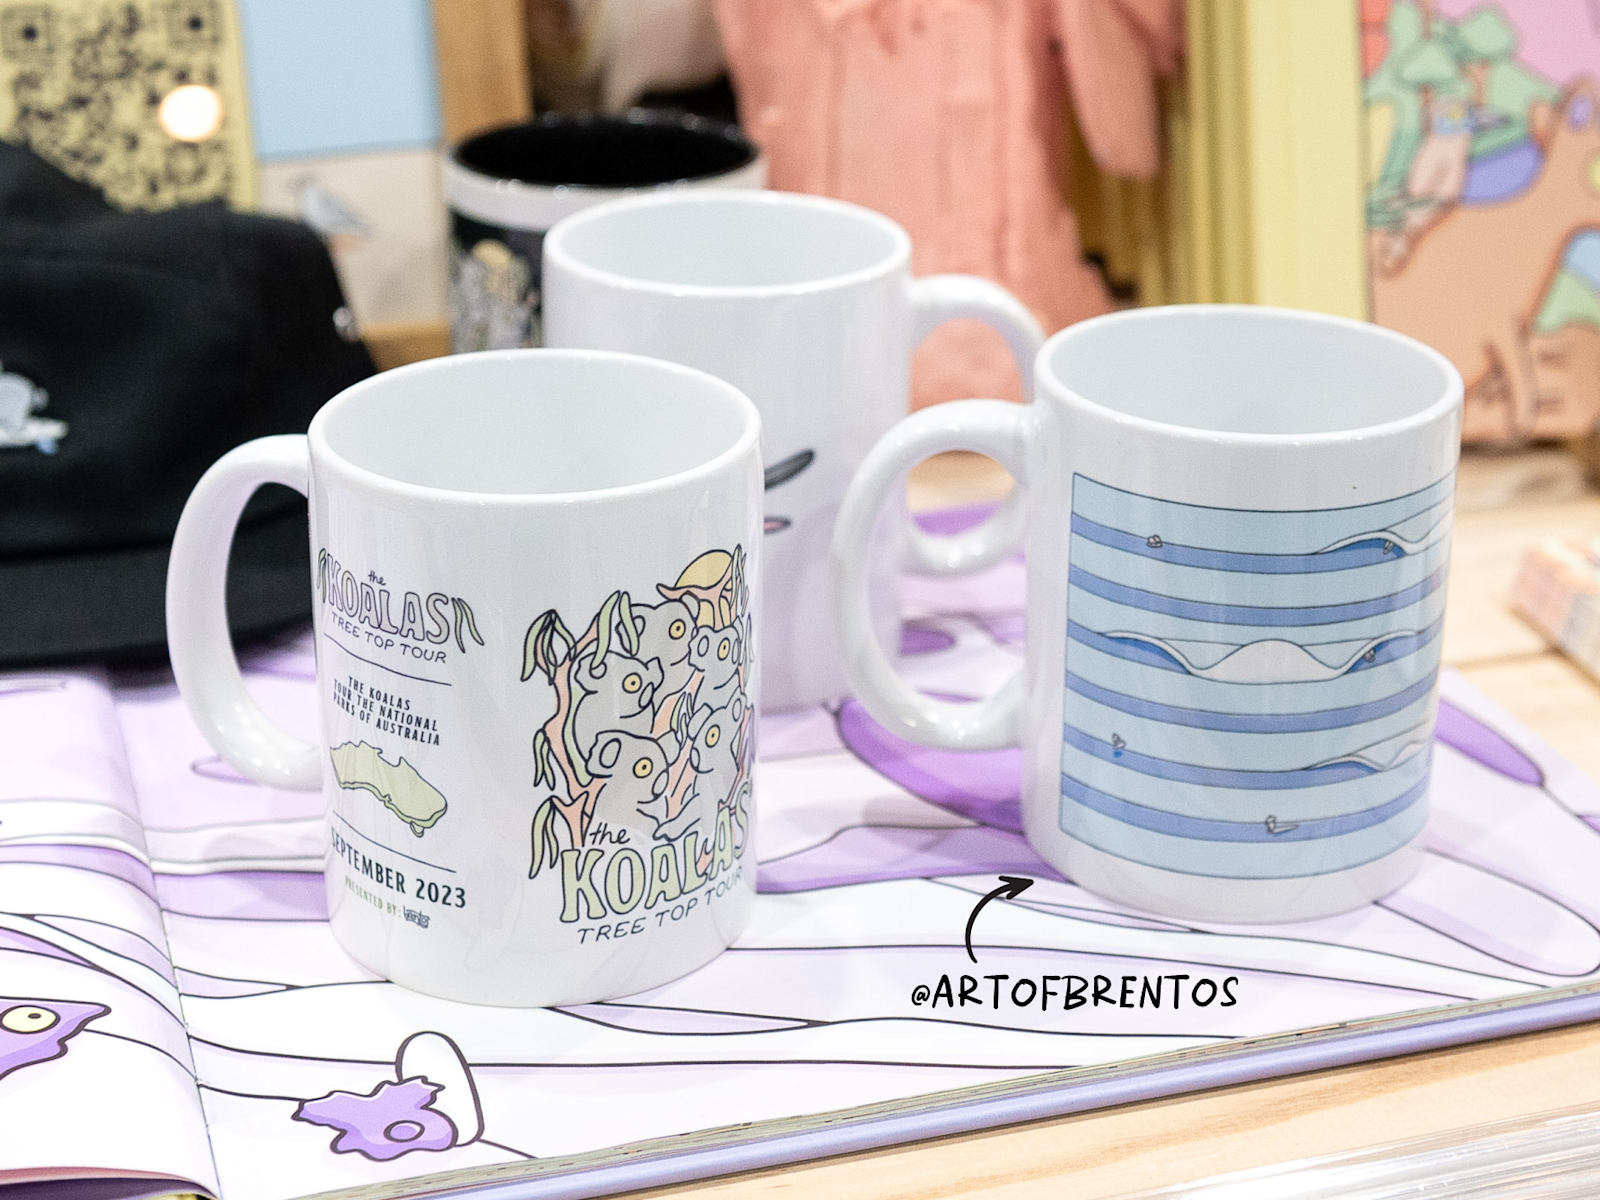 Customised mugs